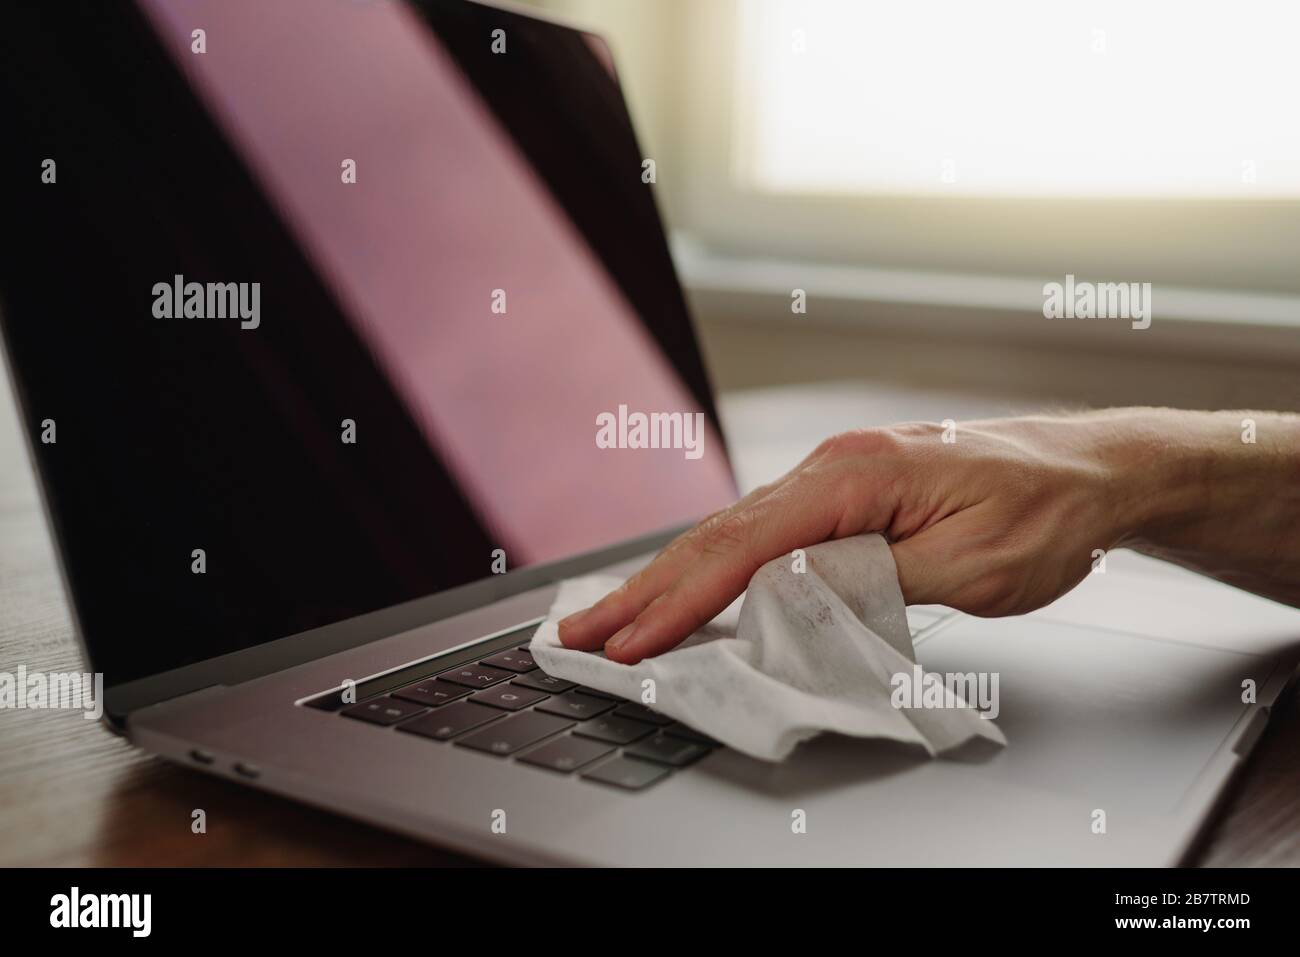 Nettoyage du clavier de l'ordinateur portable à l'aide d'un chiffon humide sur le lieu de travail. Hygiène personnelle Banque D'Images